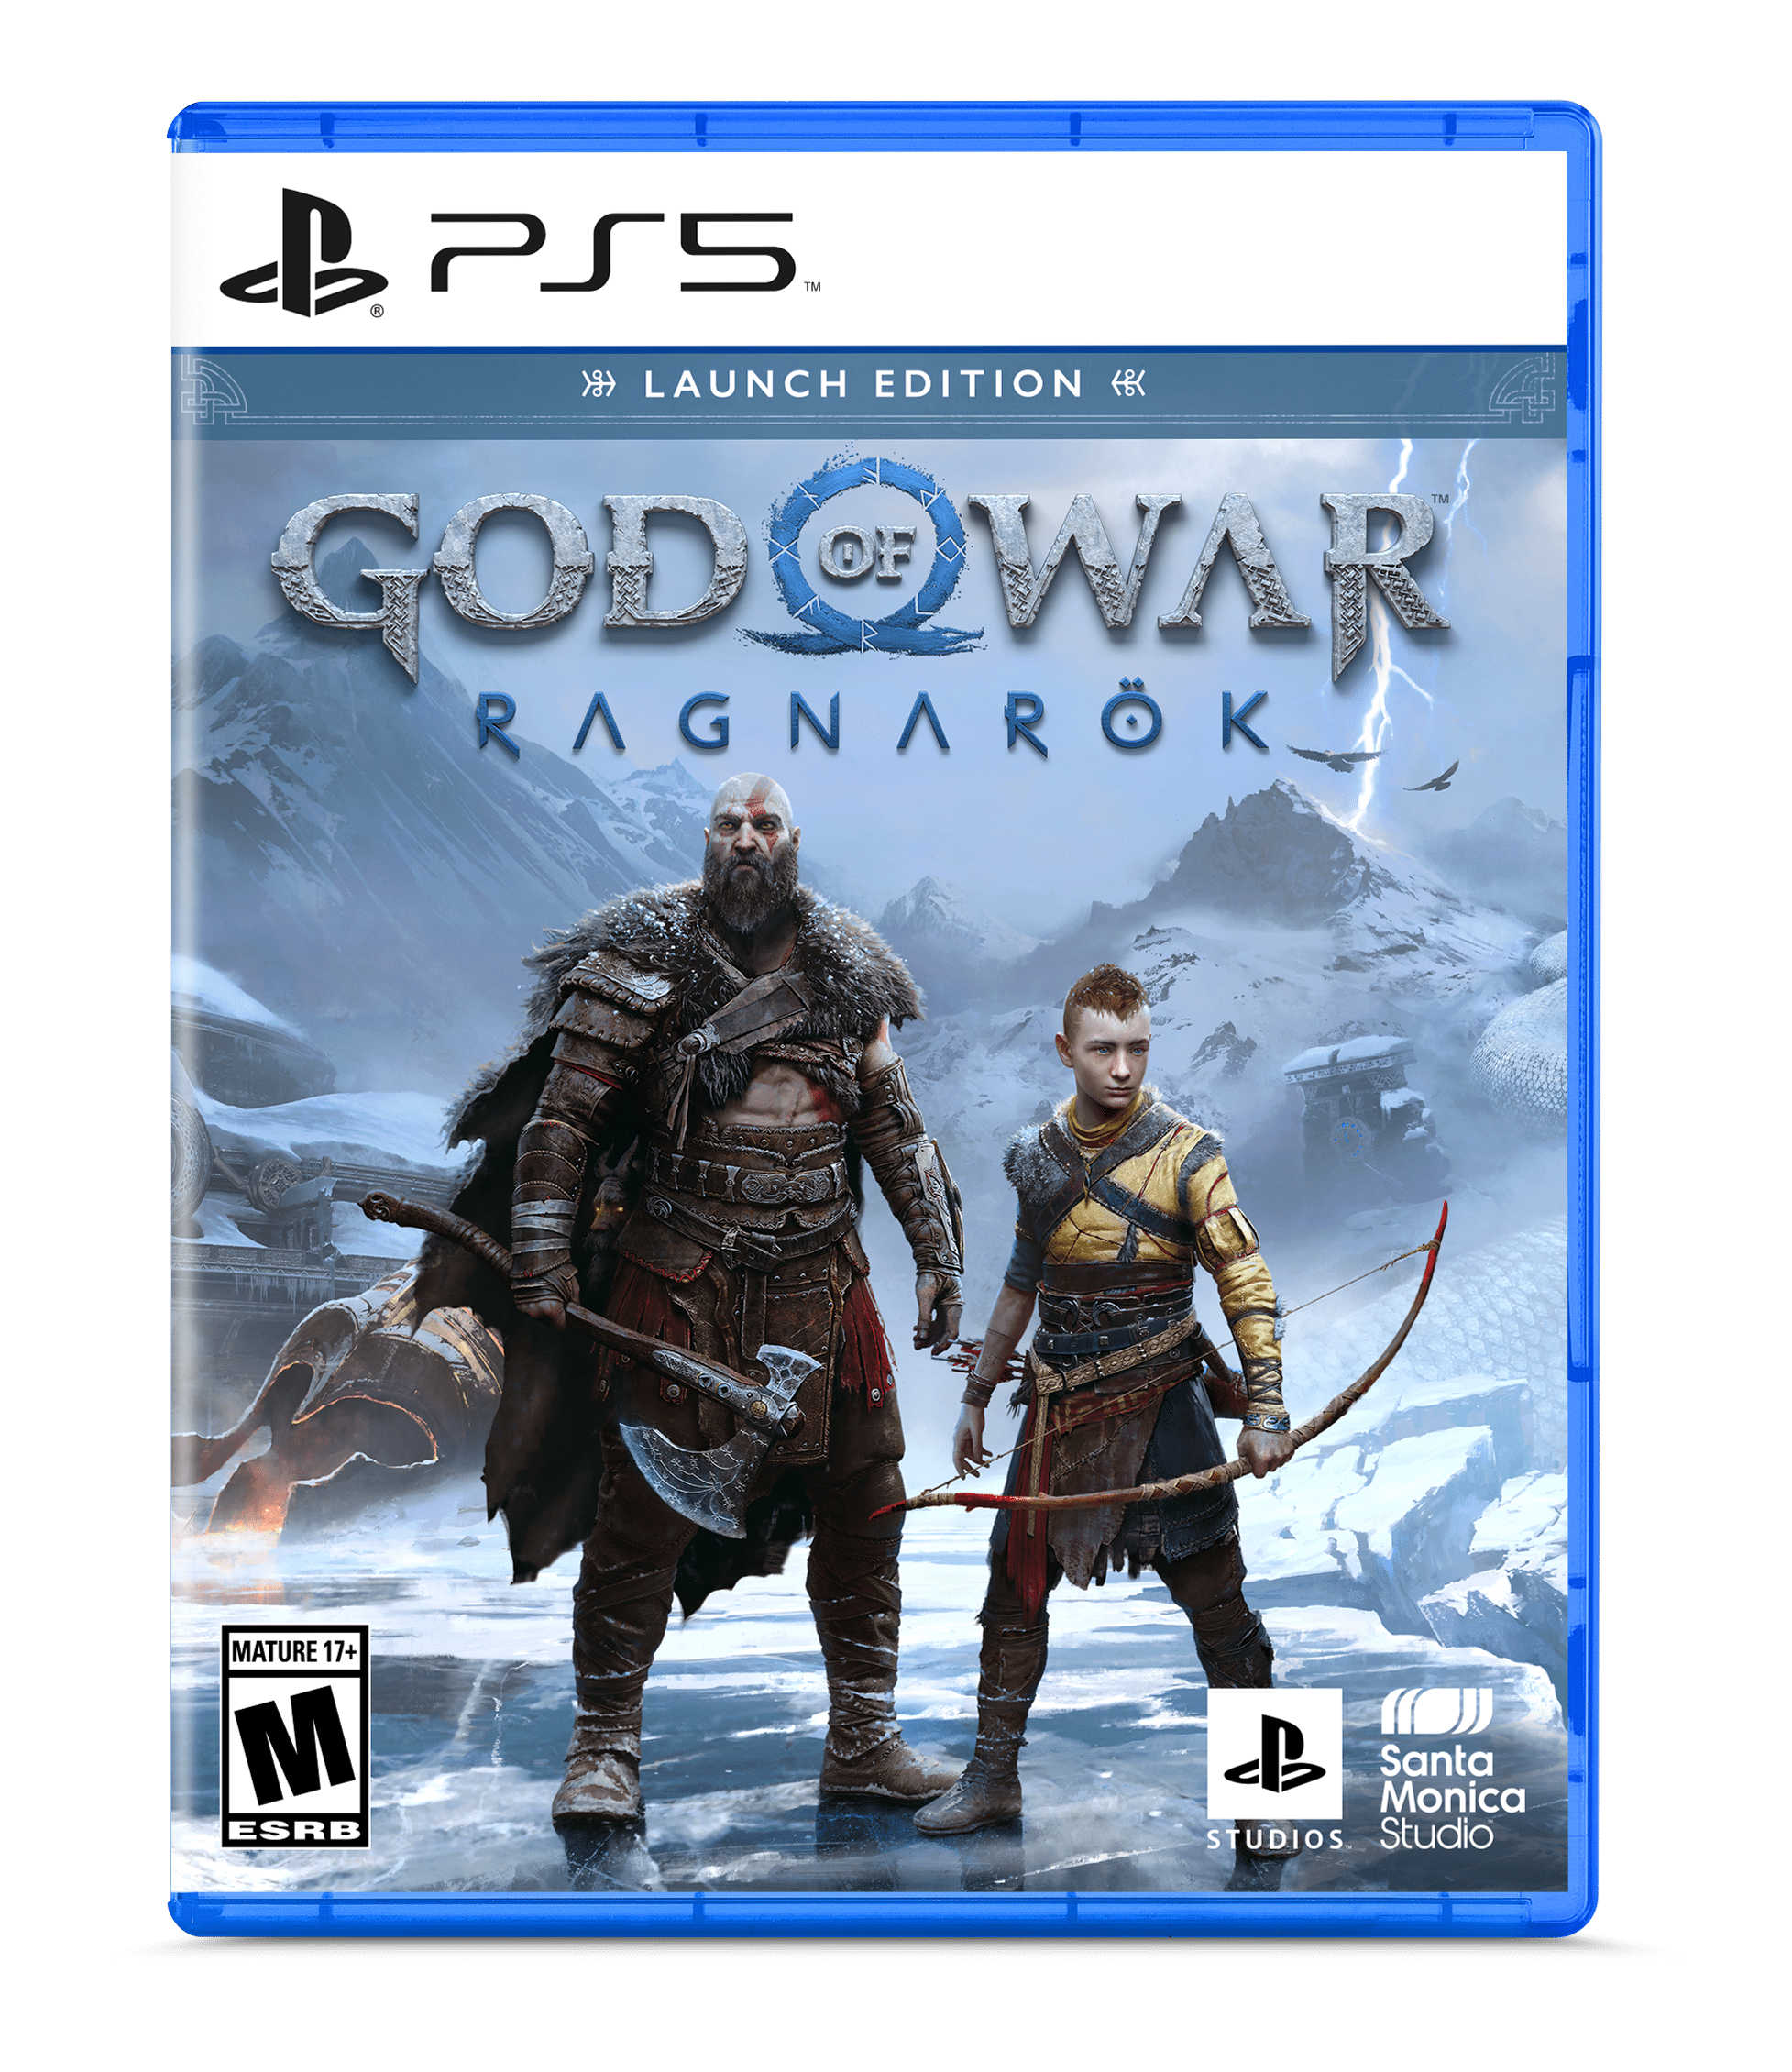 God of War Ragnarok vs God of War (2018) - Gameplay Comparison (4K